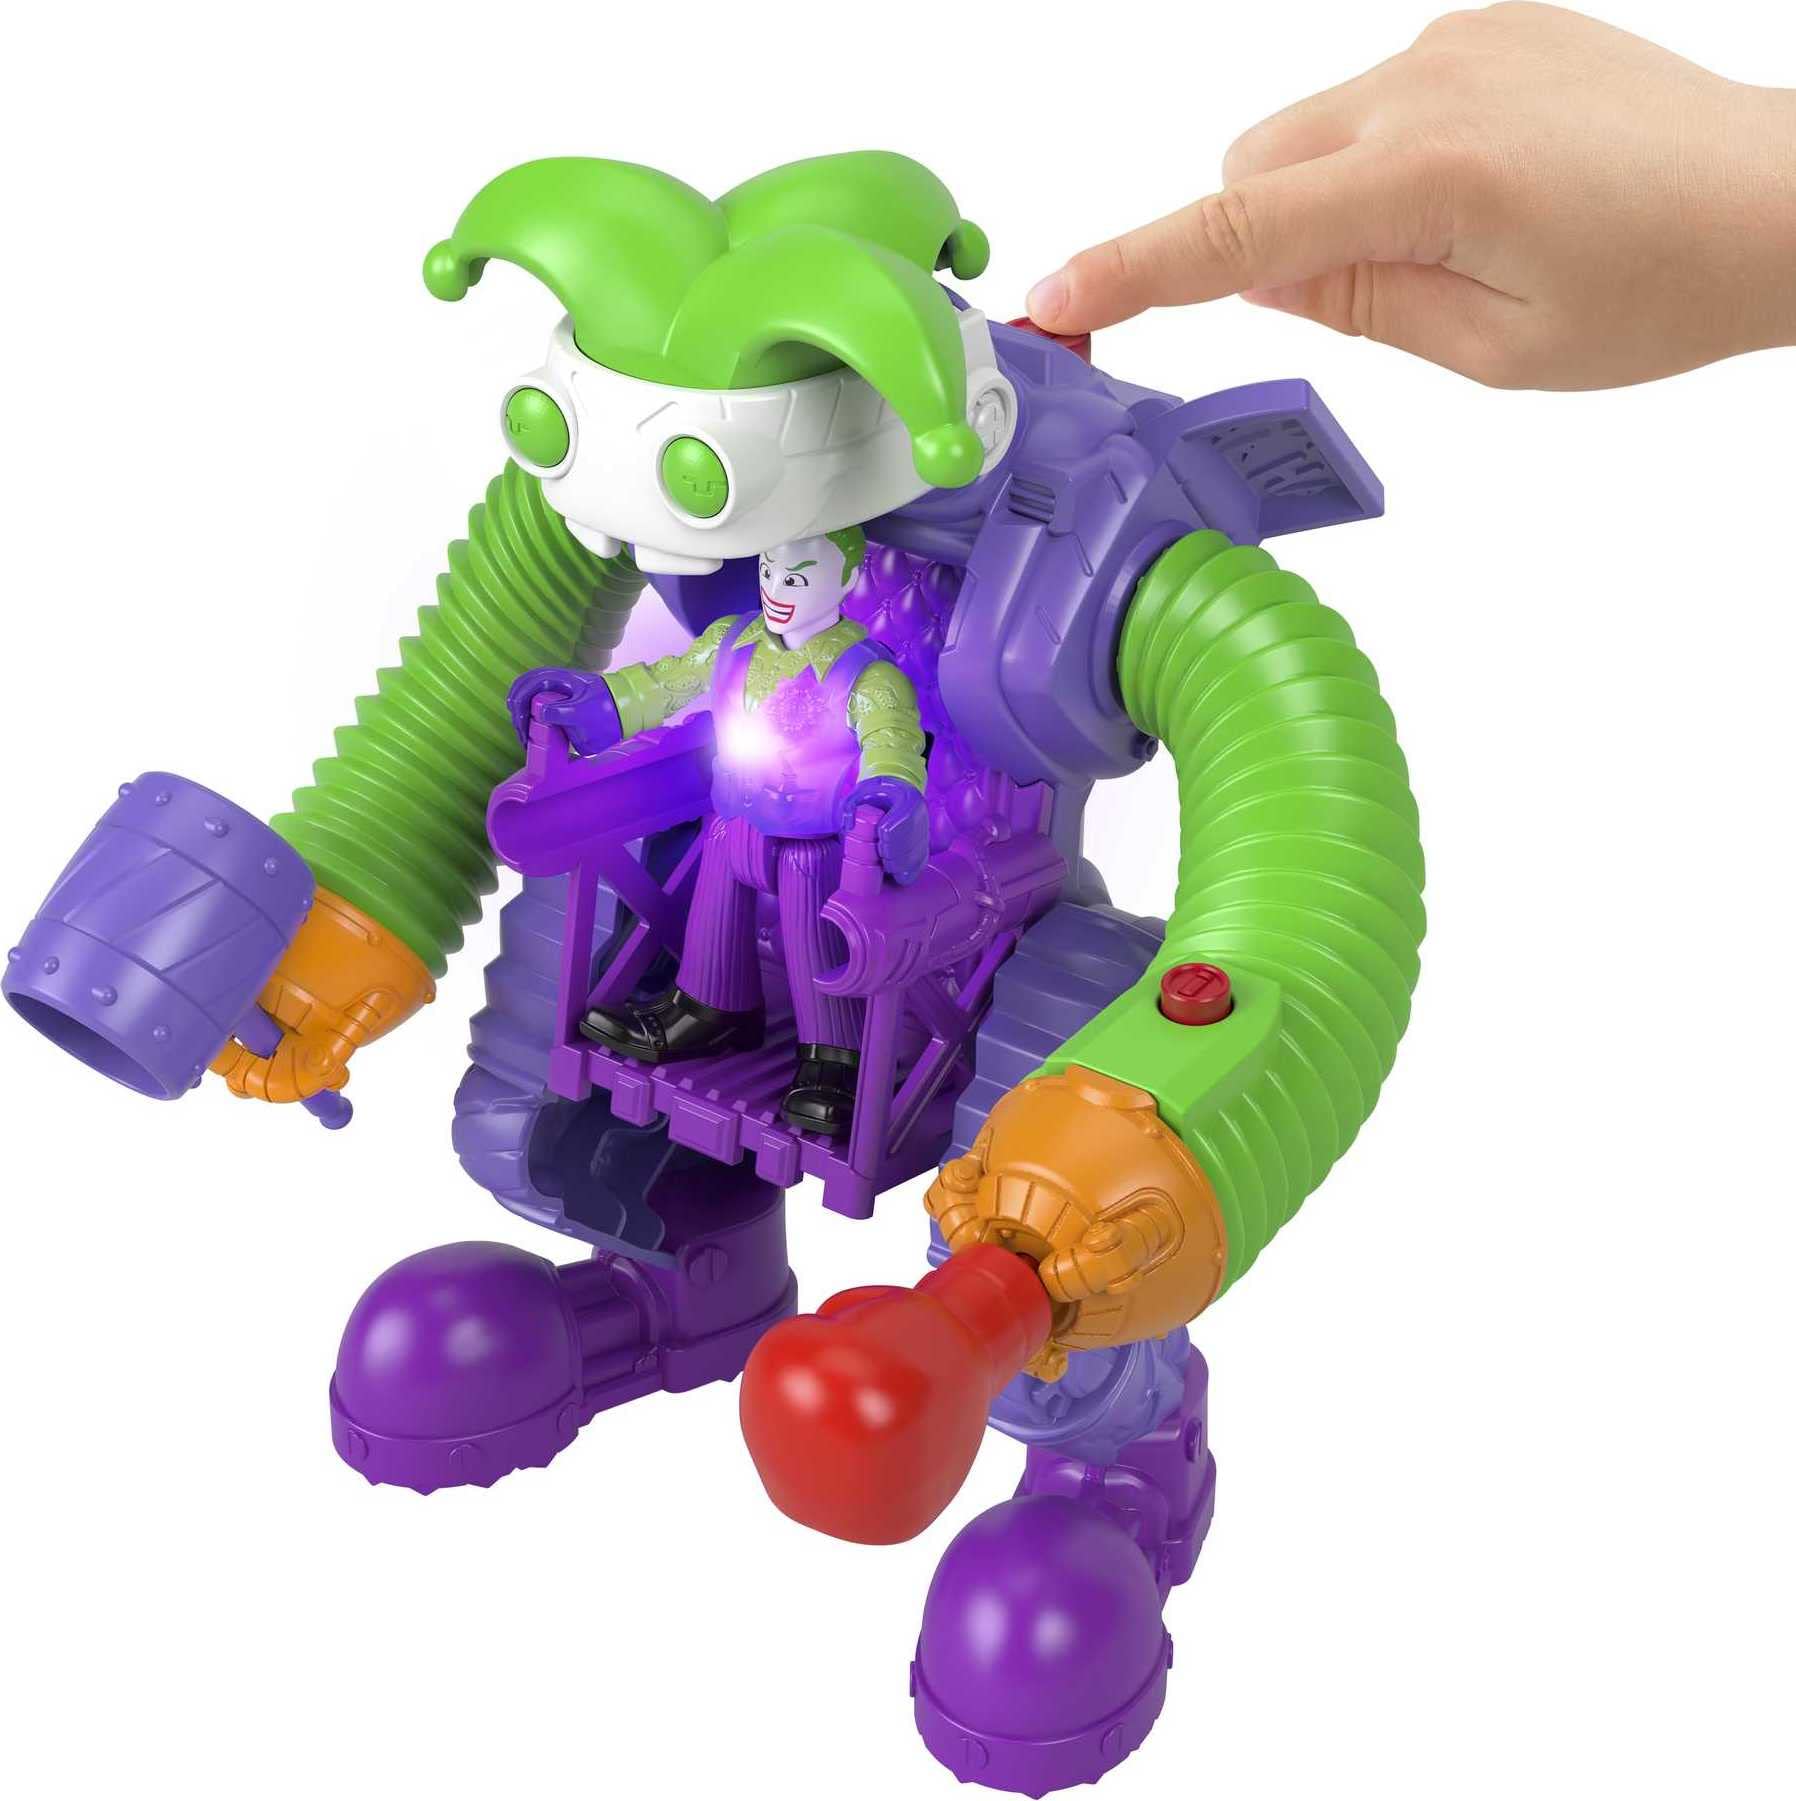 Imaginext Dc Super Friends the Joker Battling Robot, 3-Piece Figure Set with Lights for Preschool Kids